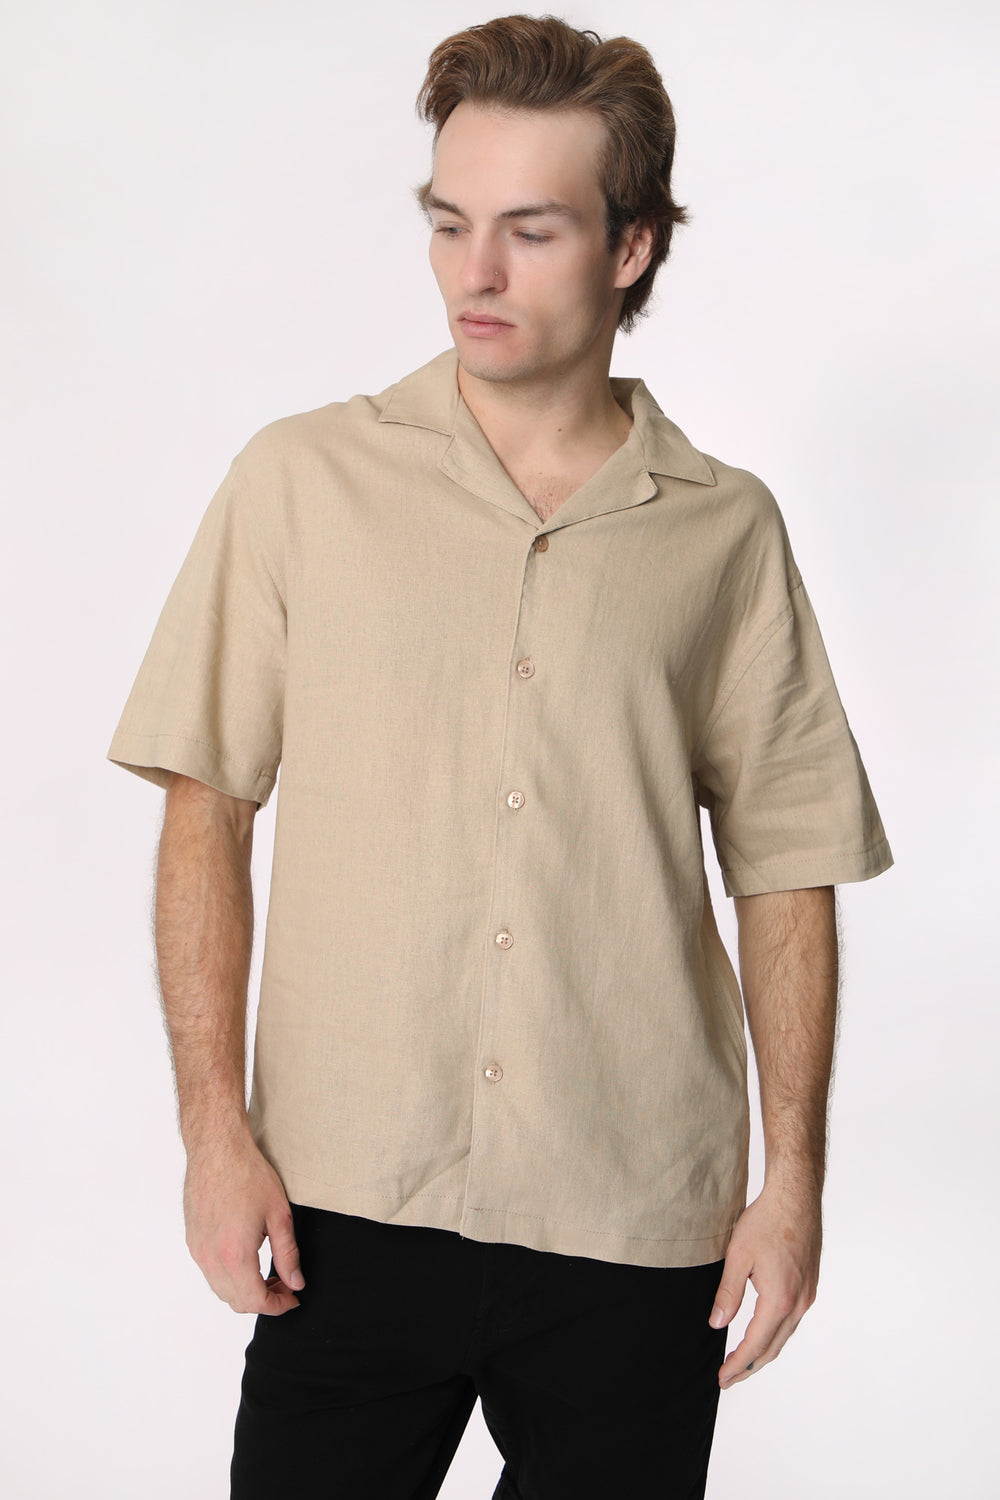 West49 Mens Linen Button-Up Khaki